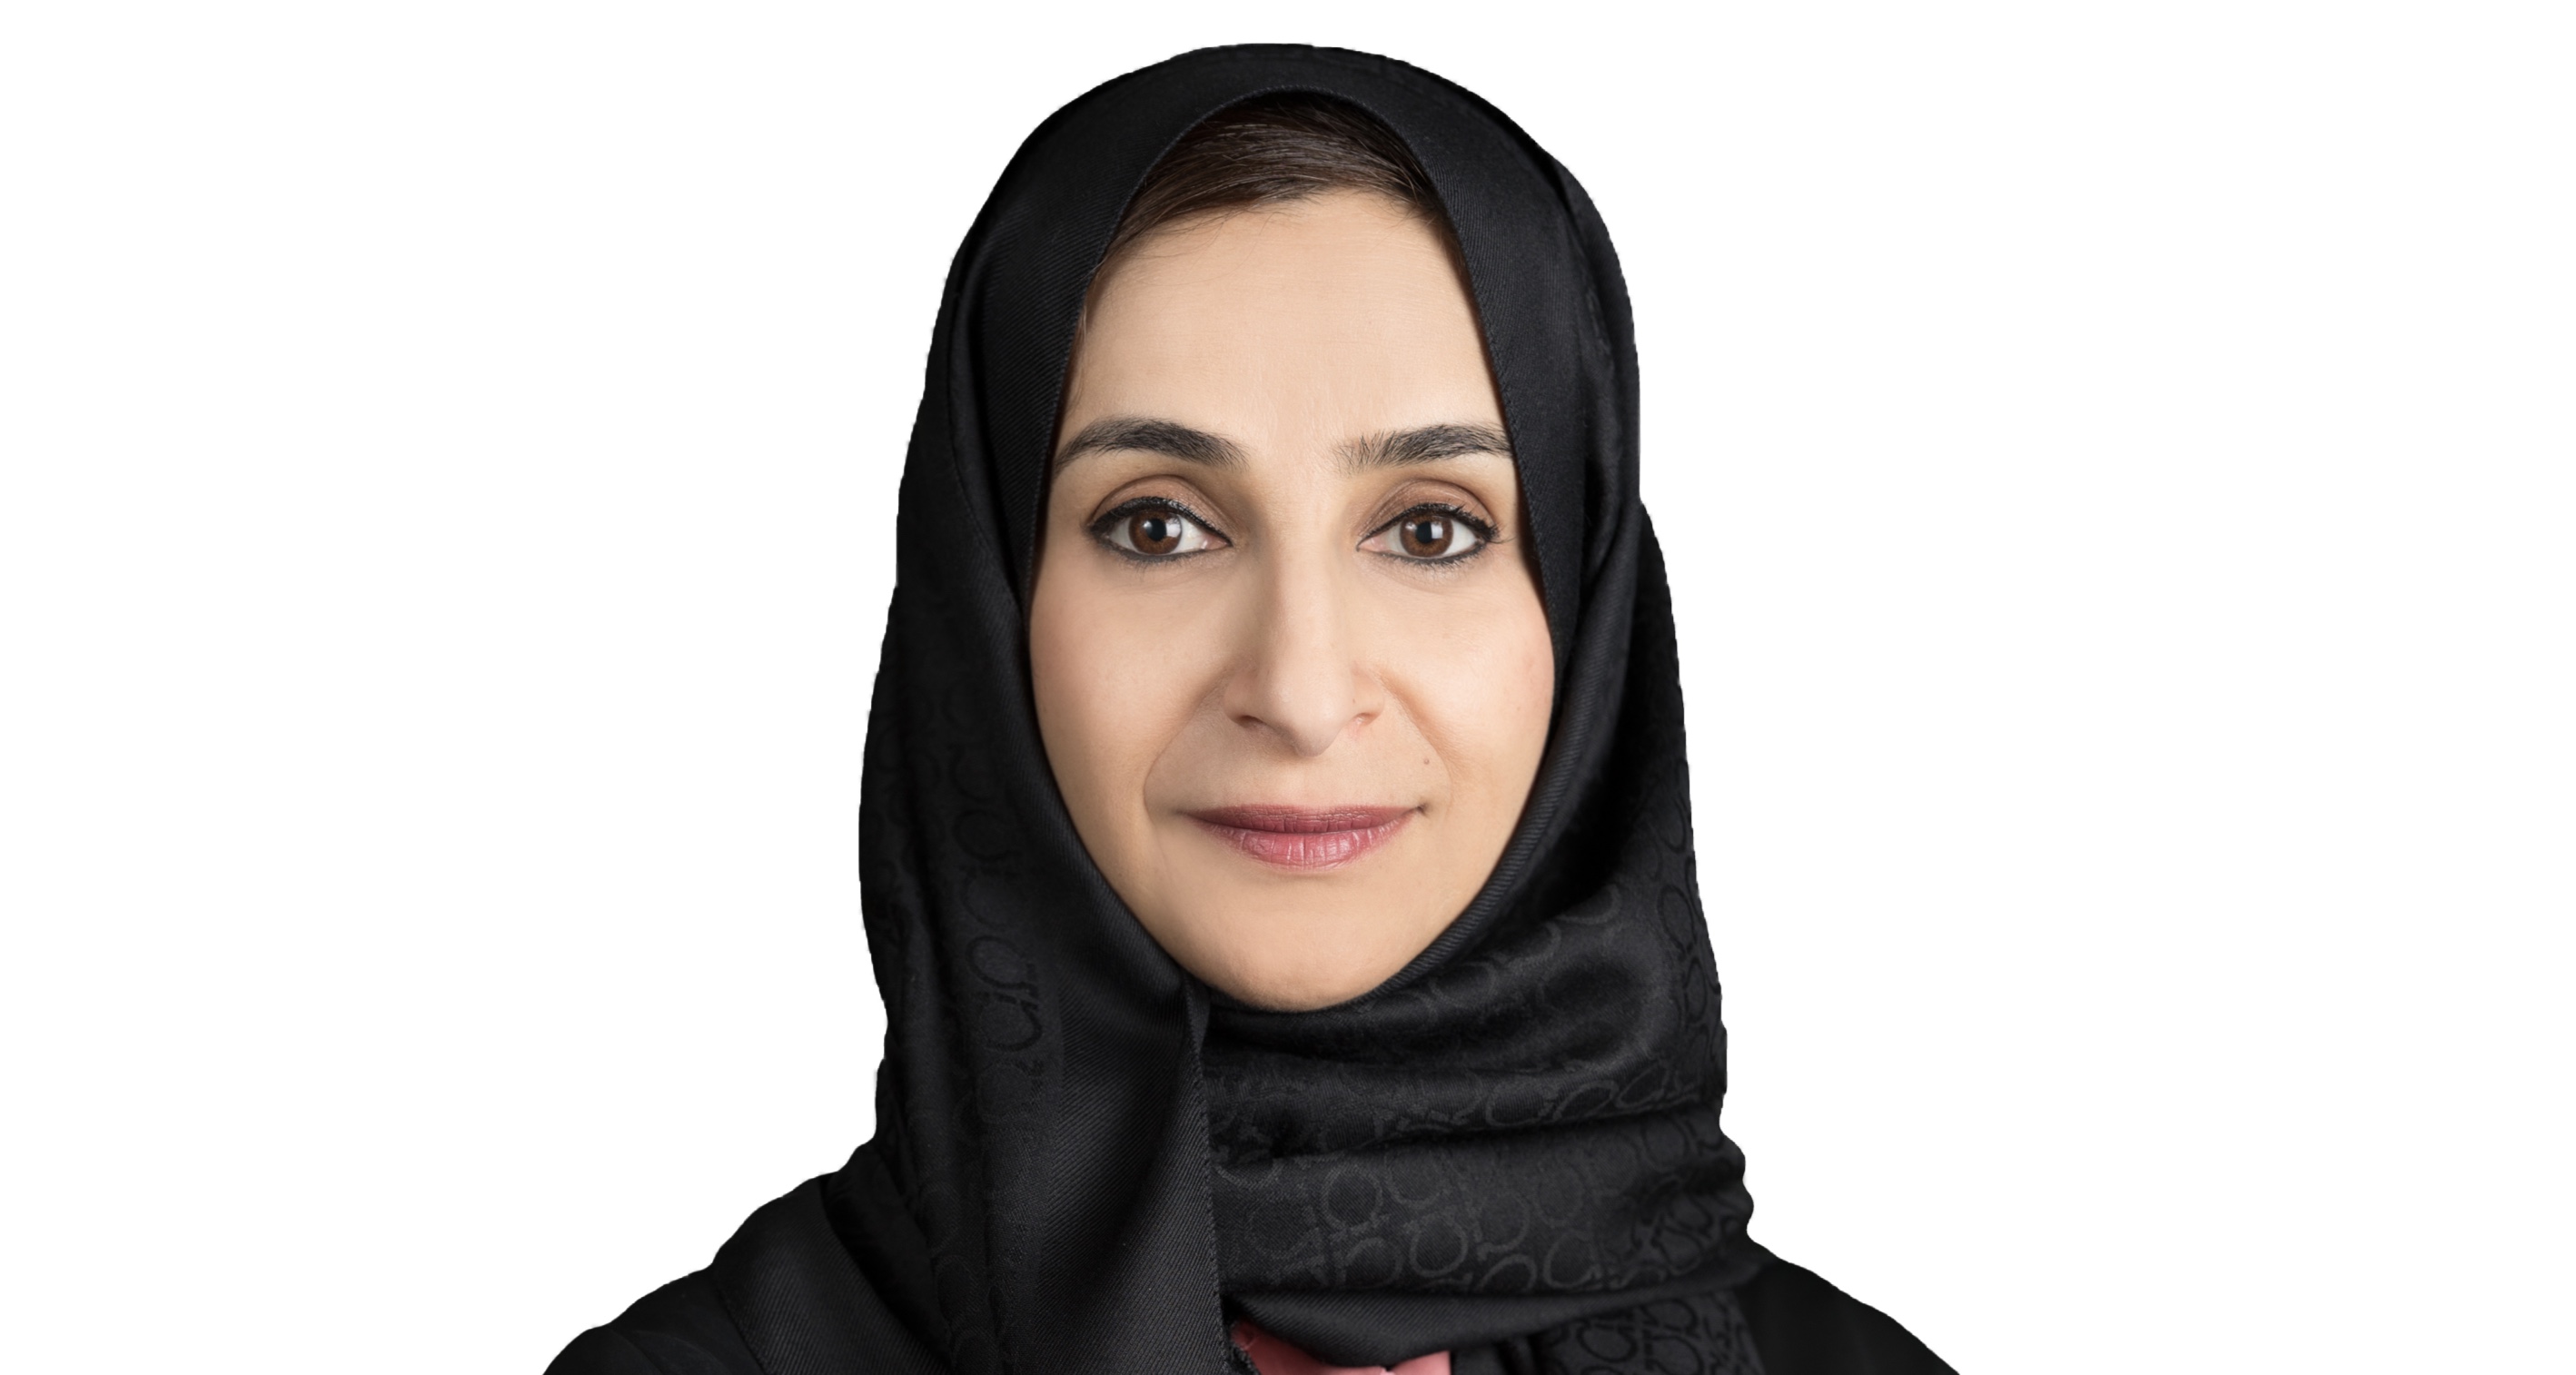 مجلس الوزراء يعتمد تشكيل مجلس إدارة مؤسسة الإمارات للتعليم المدرسي برئاسة جميلة المهيري